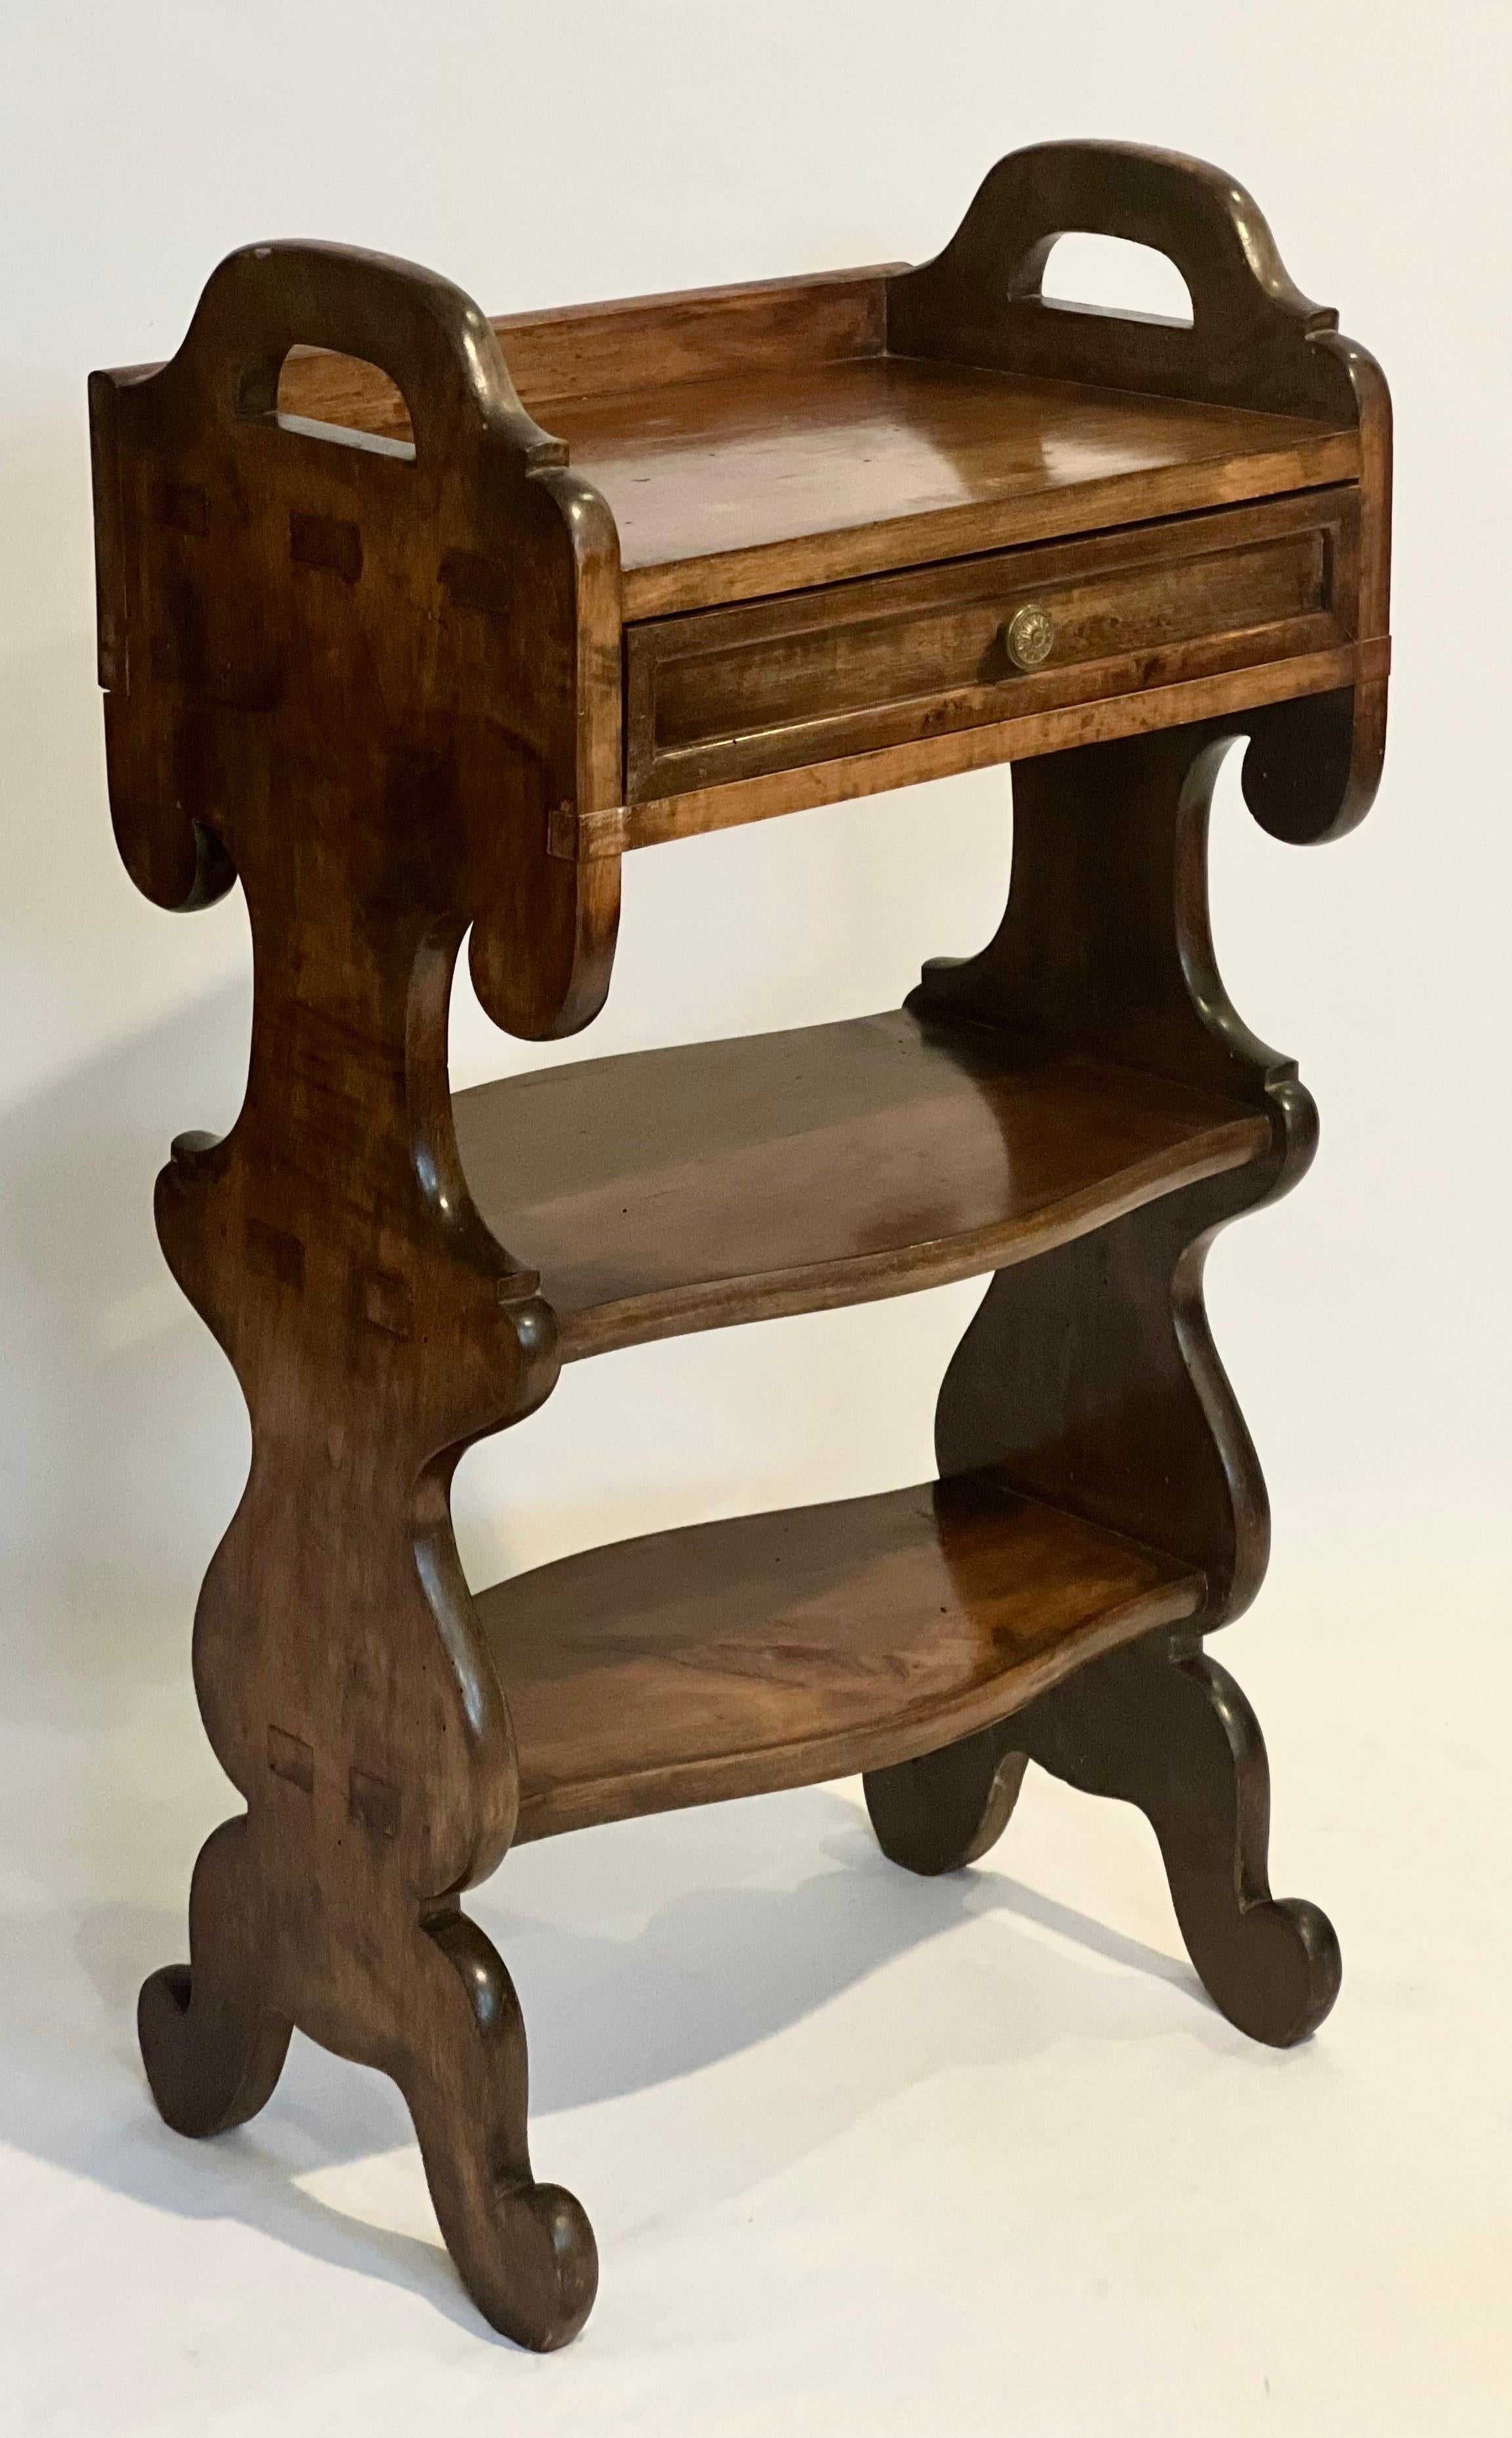 Etagère unique de style Renaissance italienne, C.I.C., fin du 18e siècle.

Ce meuble en noyer figuré, réalisé de main de maître, comporte un tiroir à l'intérieur fini et deux étagères entre des supports d'extrémité de style Renaissance. Une pièce de